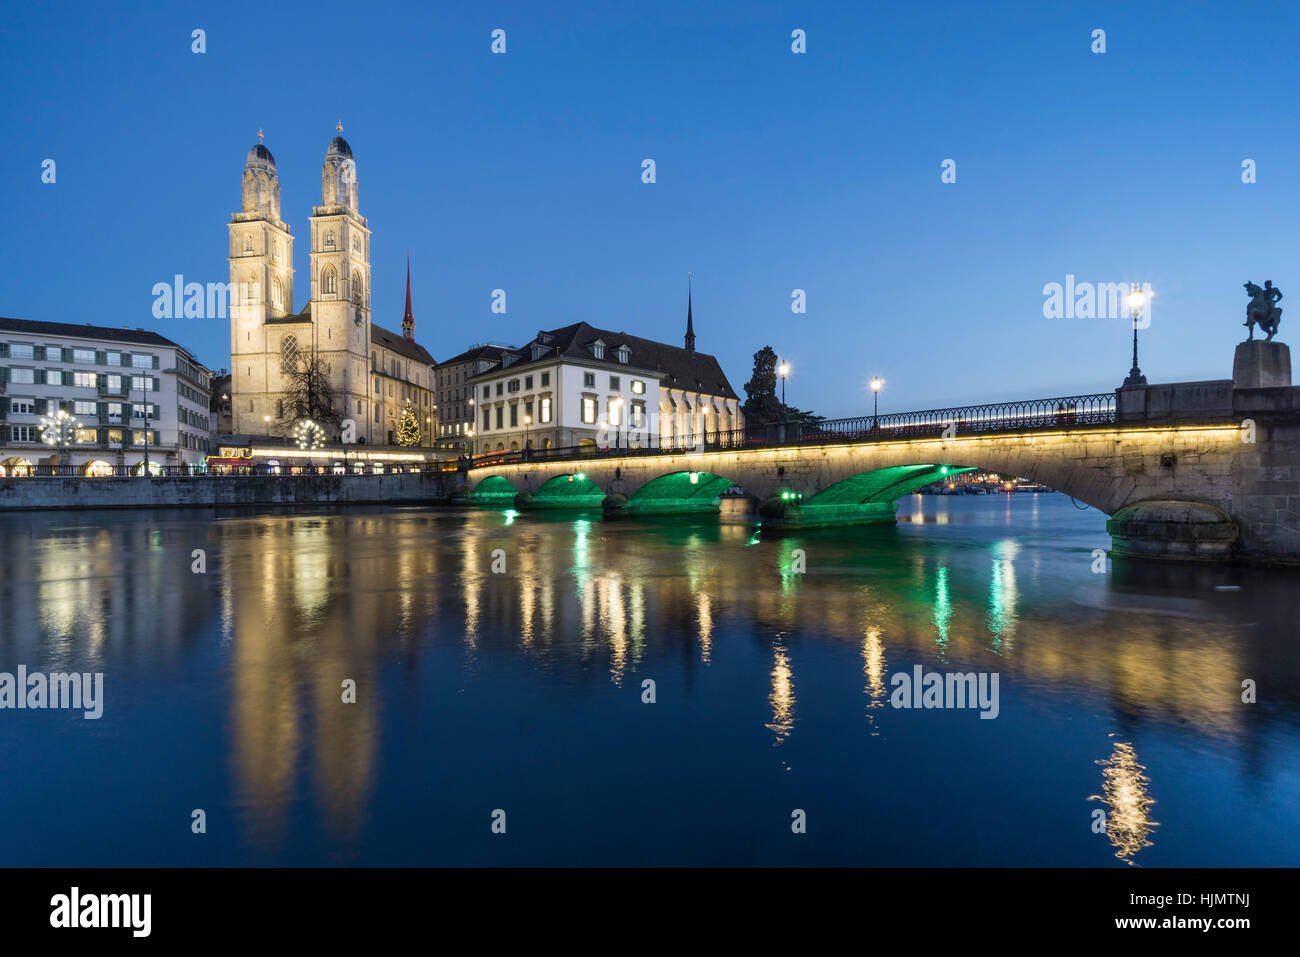 Grossmunster, river Limmat, Munster bridge, christmas illumination, Zurich, Switzerland Stock Photo